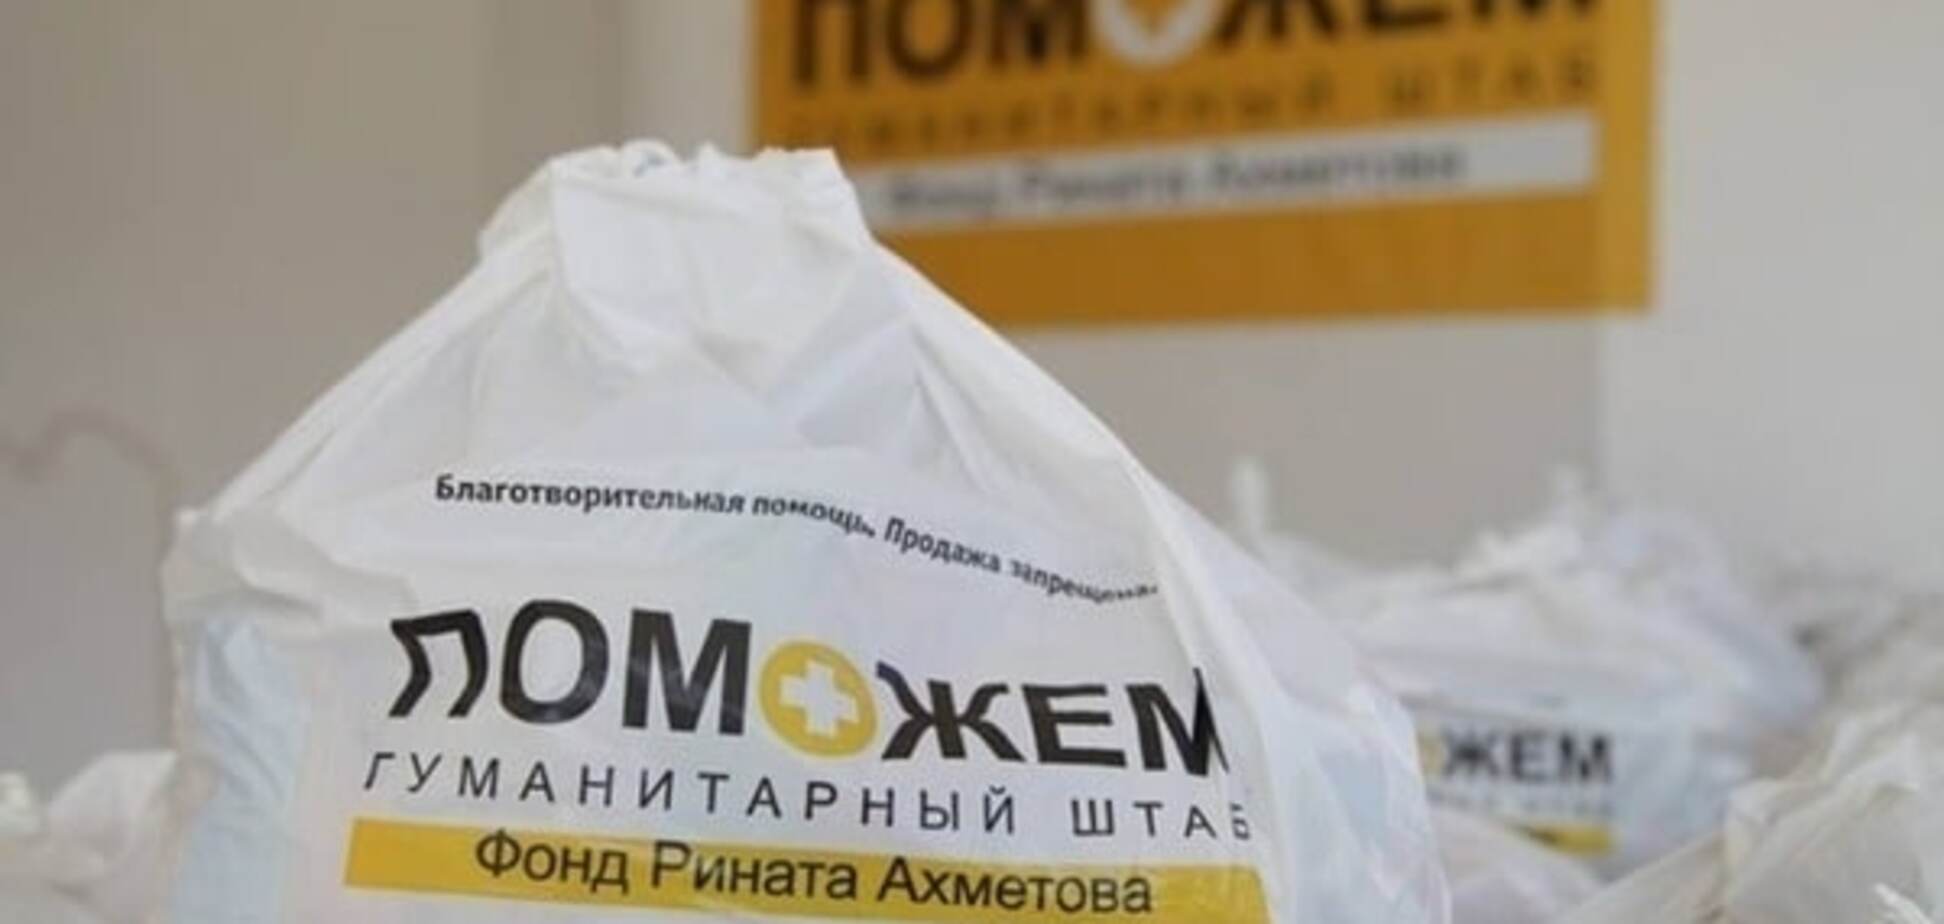 Помощь и внимание: гумштаб Ахметова отчитался о доставке помощи в села на Донбассе